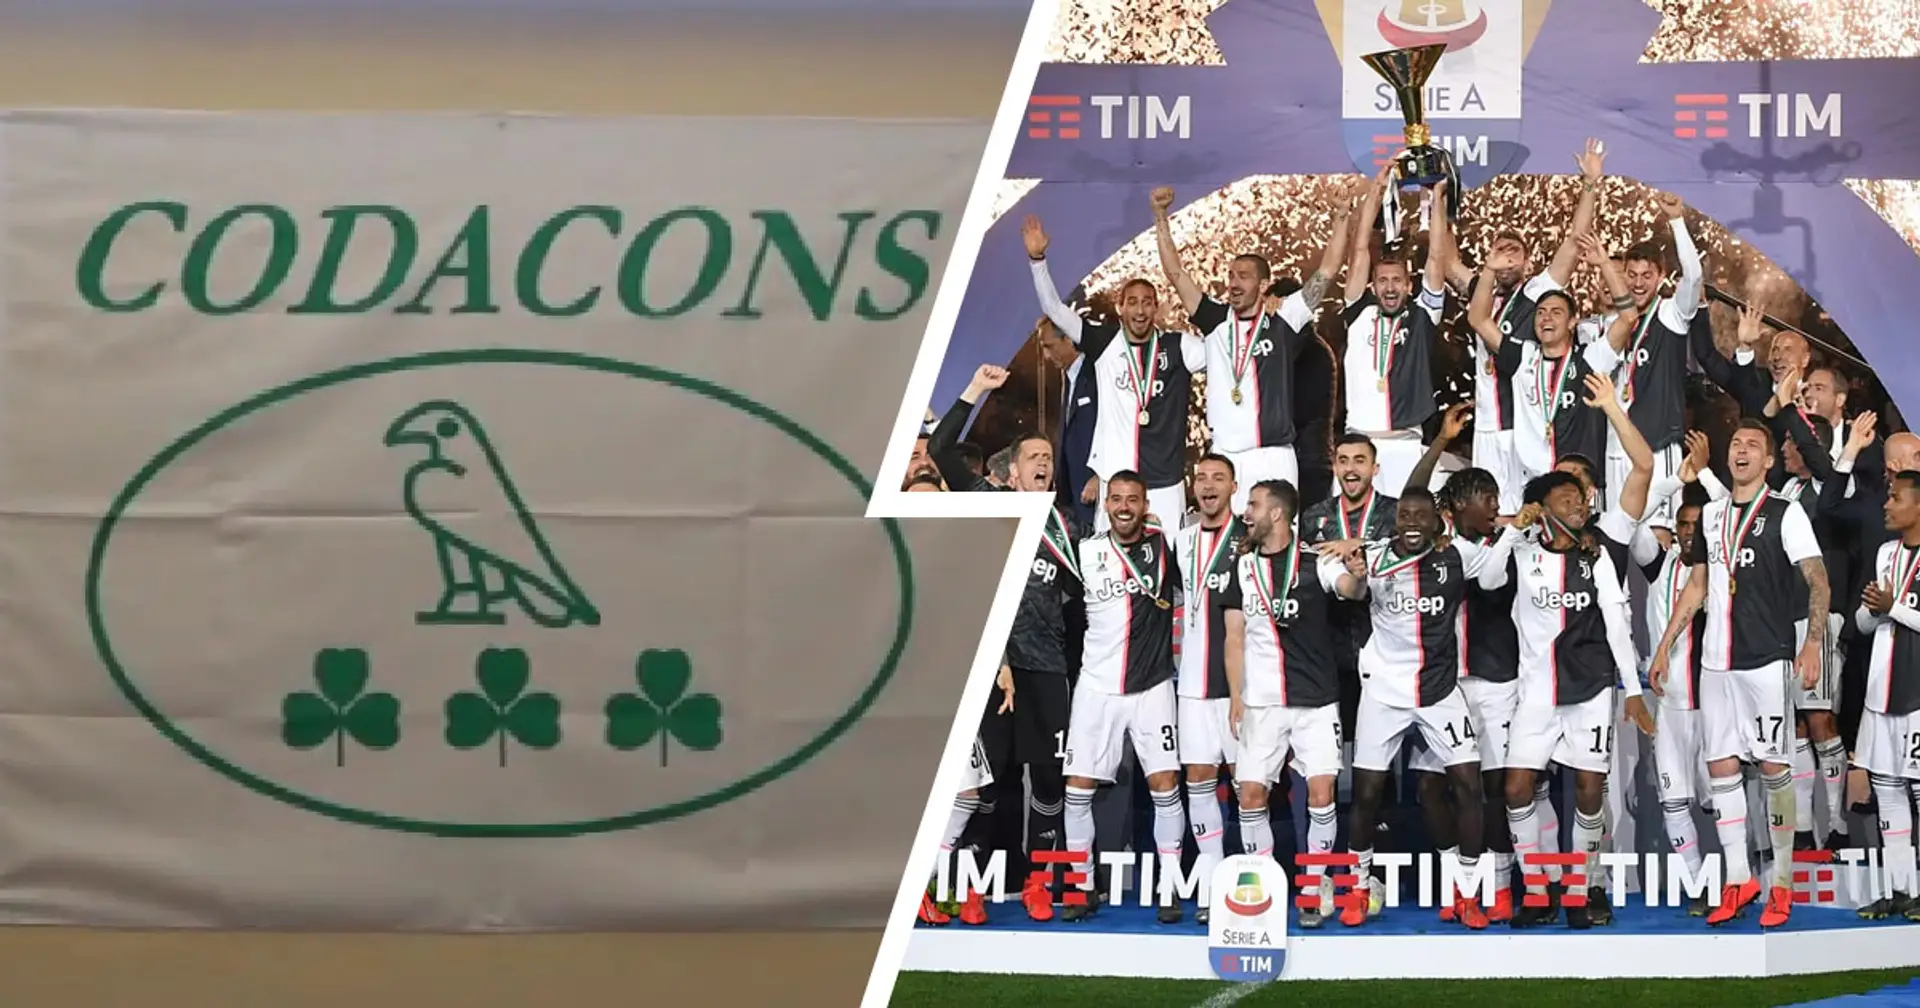 Codacons e un "club" Napoli vanno al Tar: chiesta revoca dello scudetto 2018-2019 della Juventus